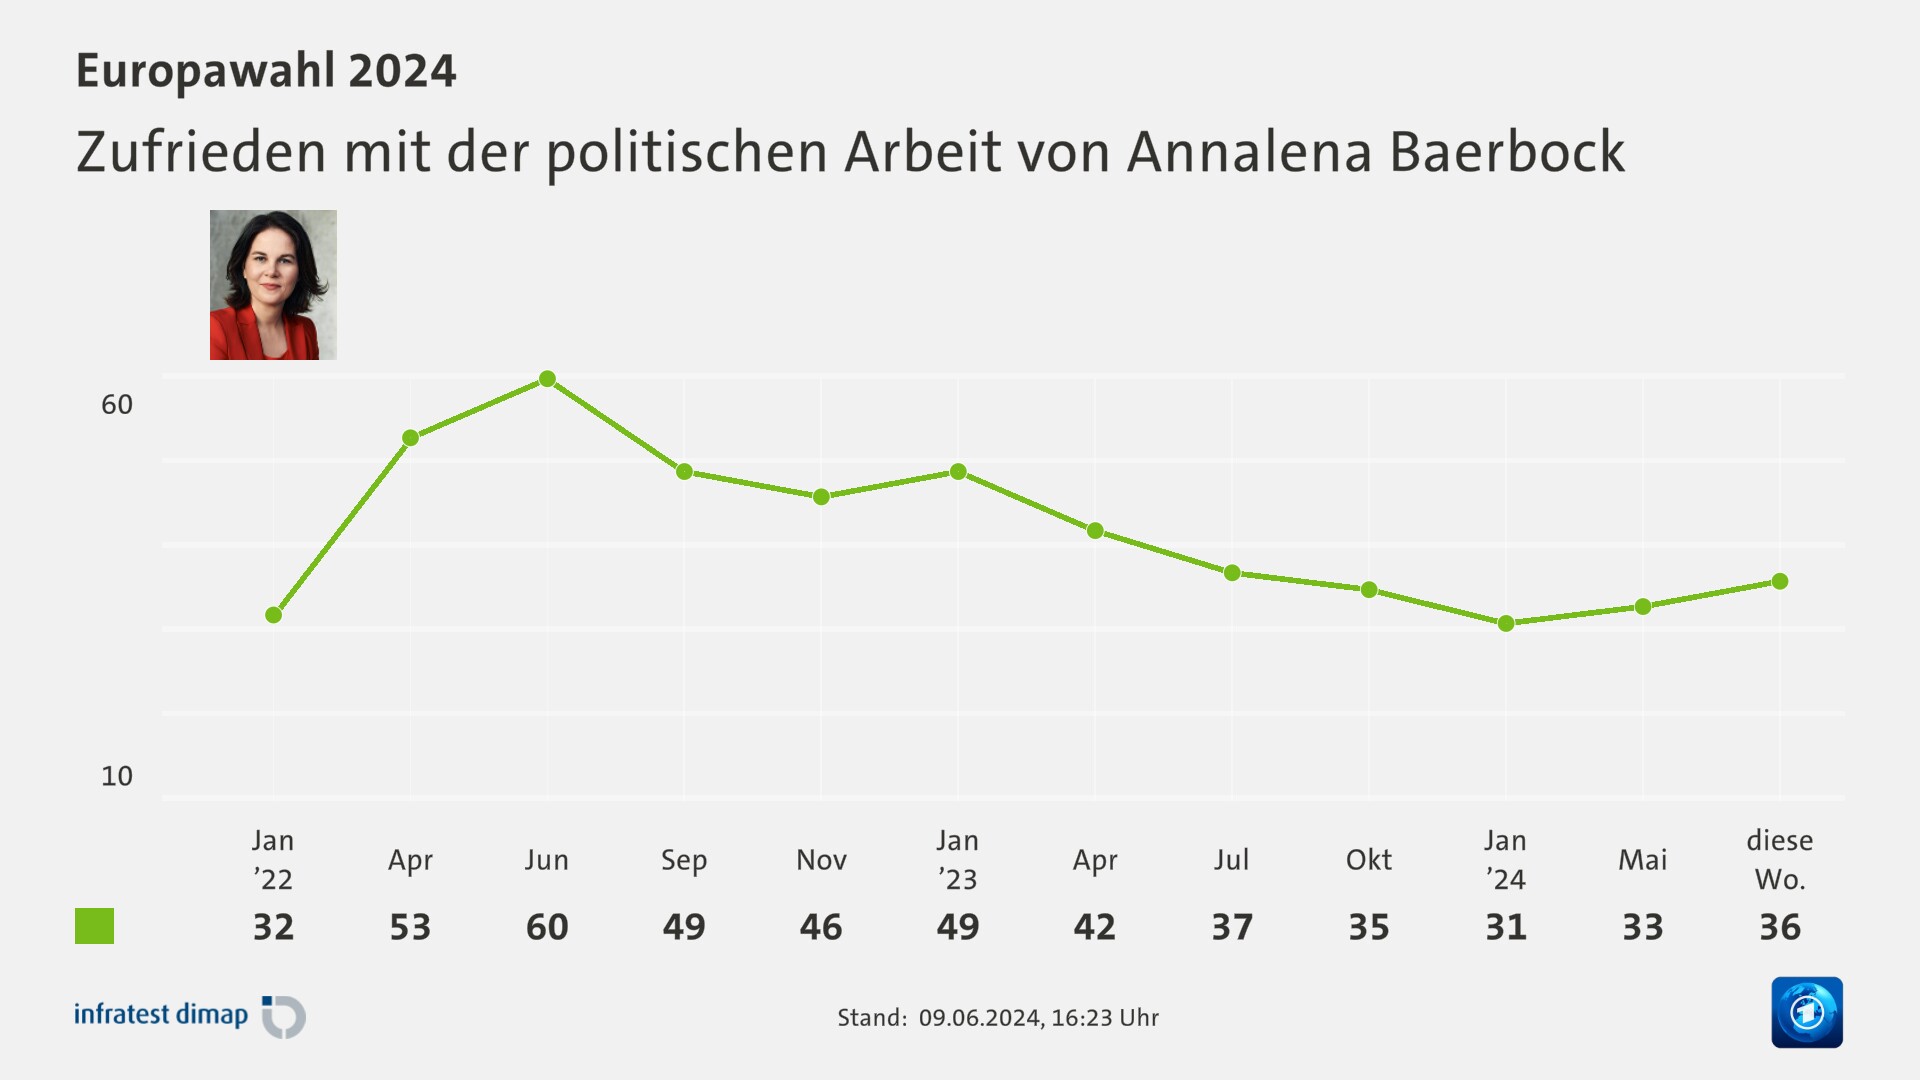 Zufrieden mit der politischen Arbeit von Annalena Baerbock